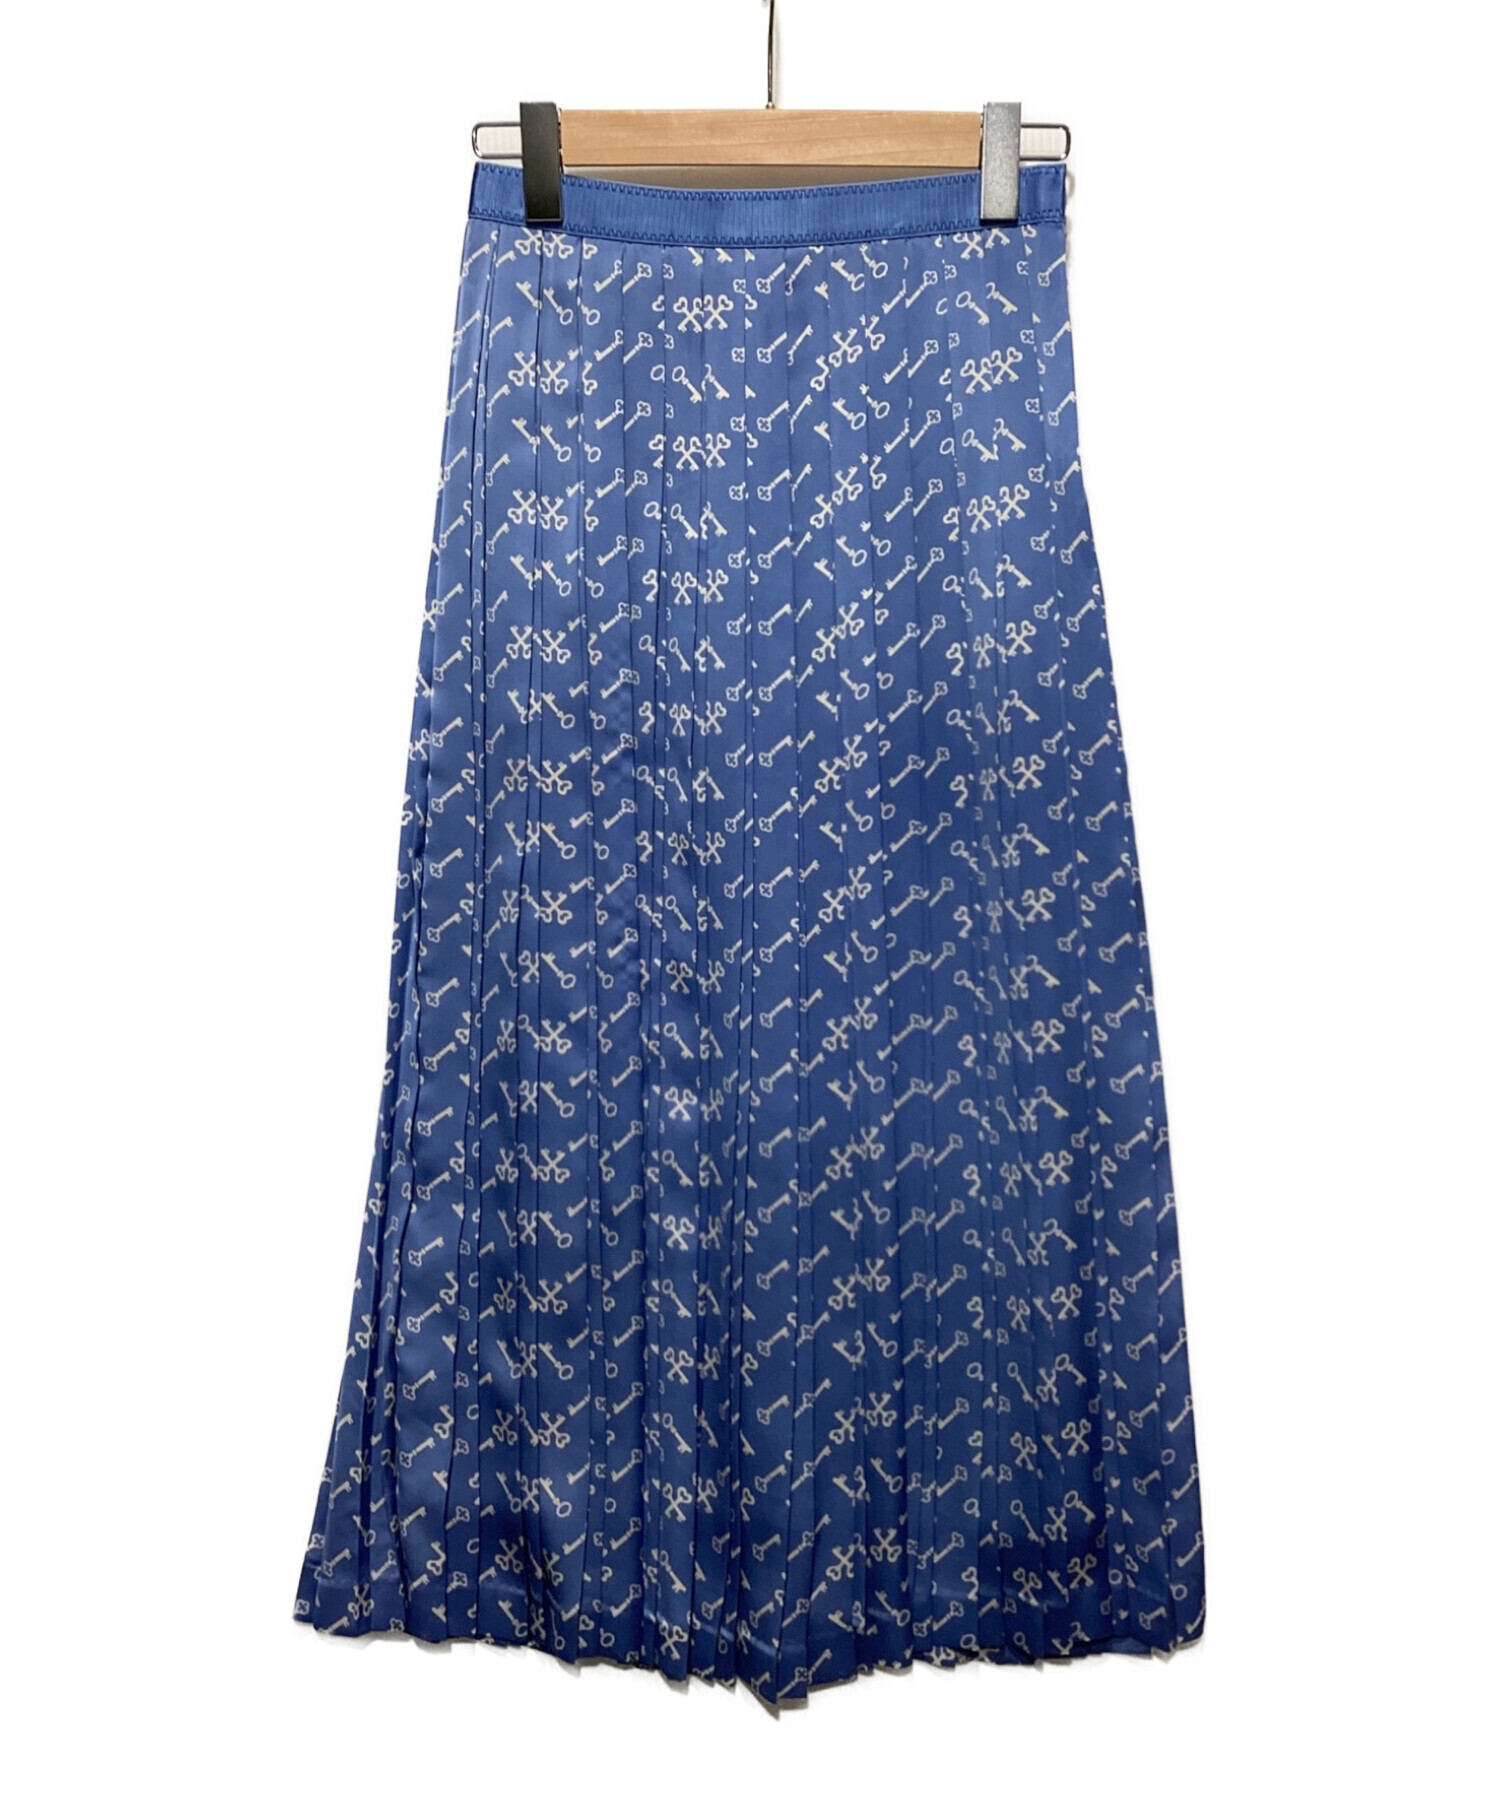 ANAYI (アナイ) キープリントプリーツスカート ブルー サイズ:38